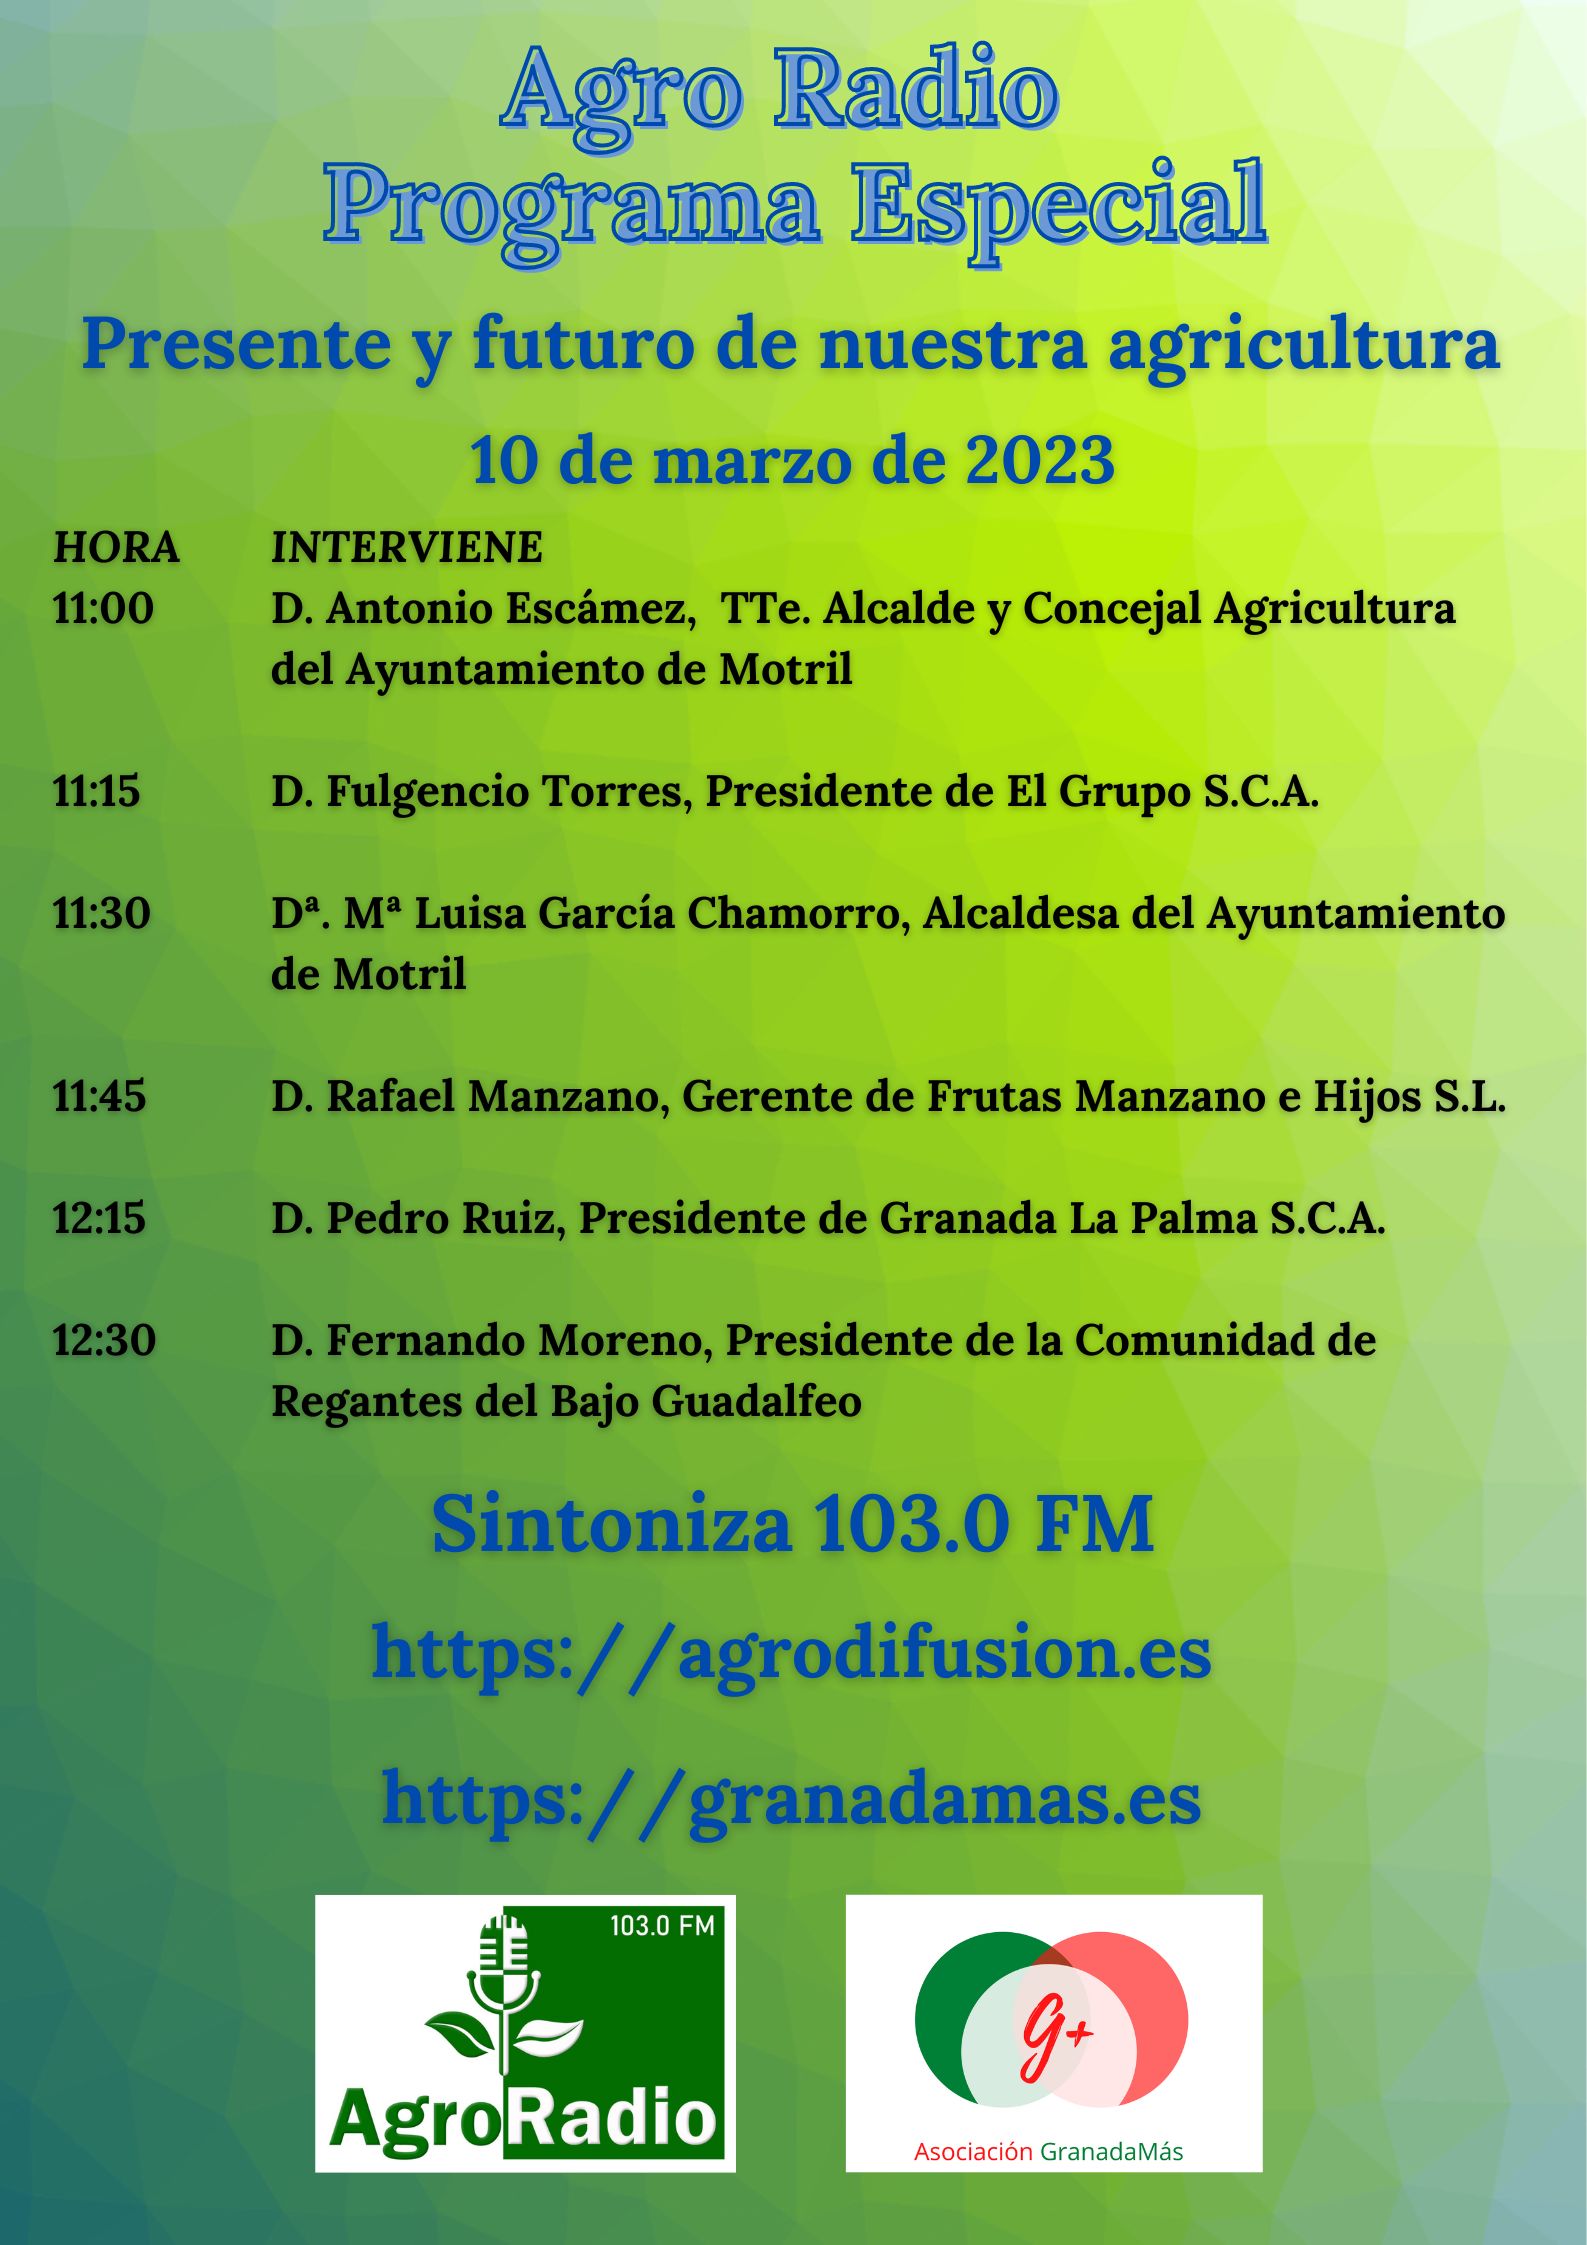 Programa especial de radio, el presente y futuro de nuestra agricultura